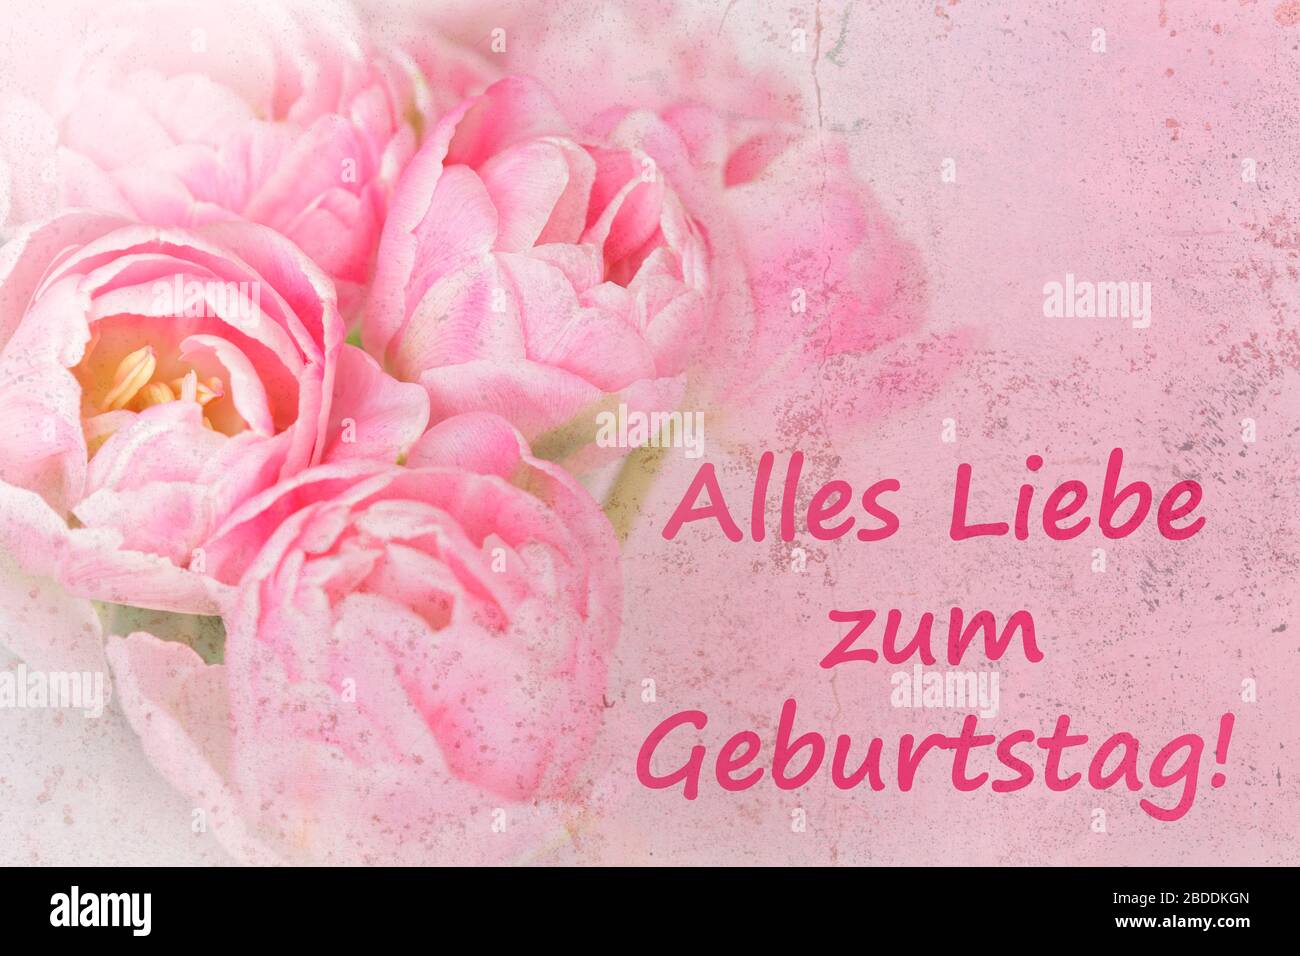 Vorlage für nostalgische Grußkarten. Rosa Blumen mit Text: Alles gute zum Geburtstag in deutscher Sprache, verärgerter Grunge-Effekt. Stockfoto